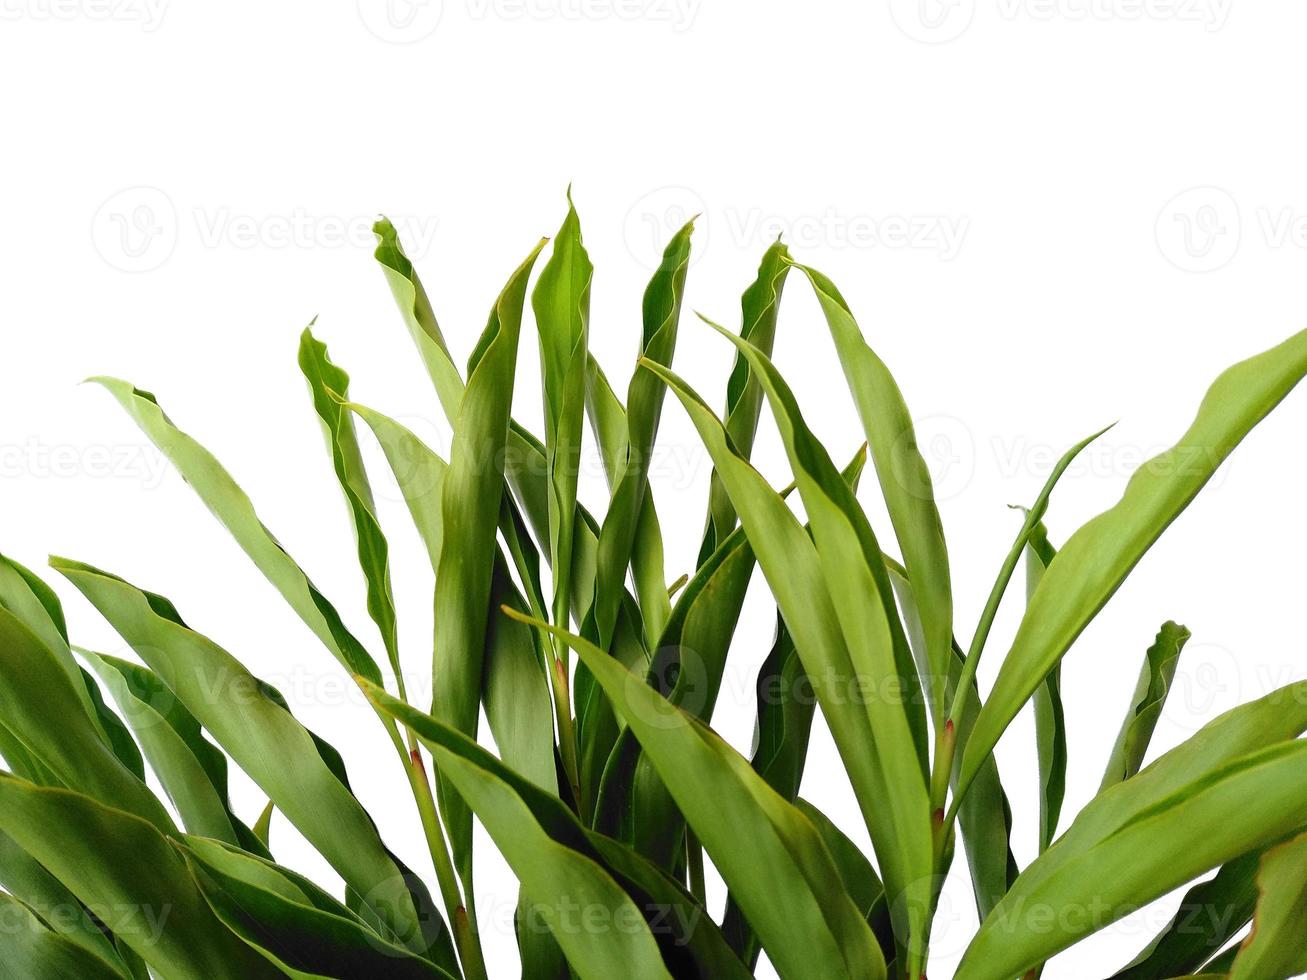 feuilles vertes ou arbre isolé sur fond blanc photo